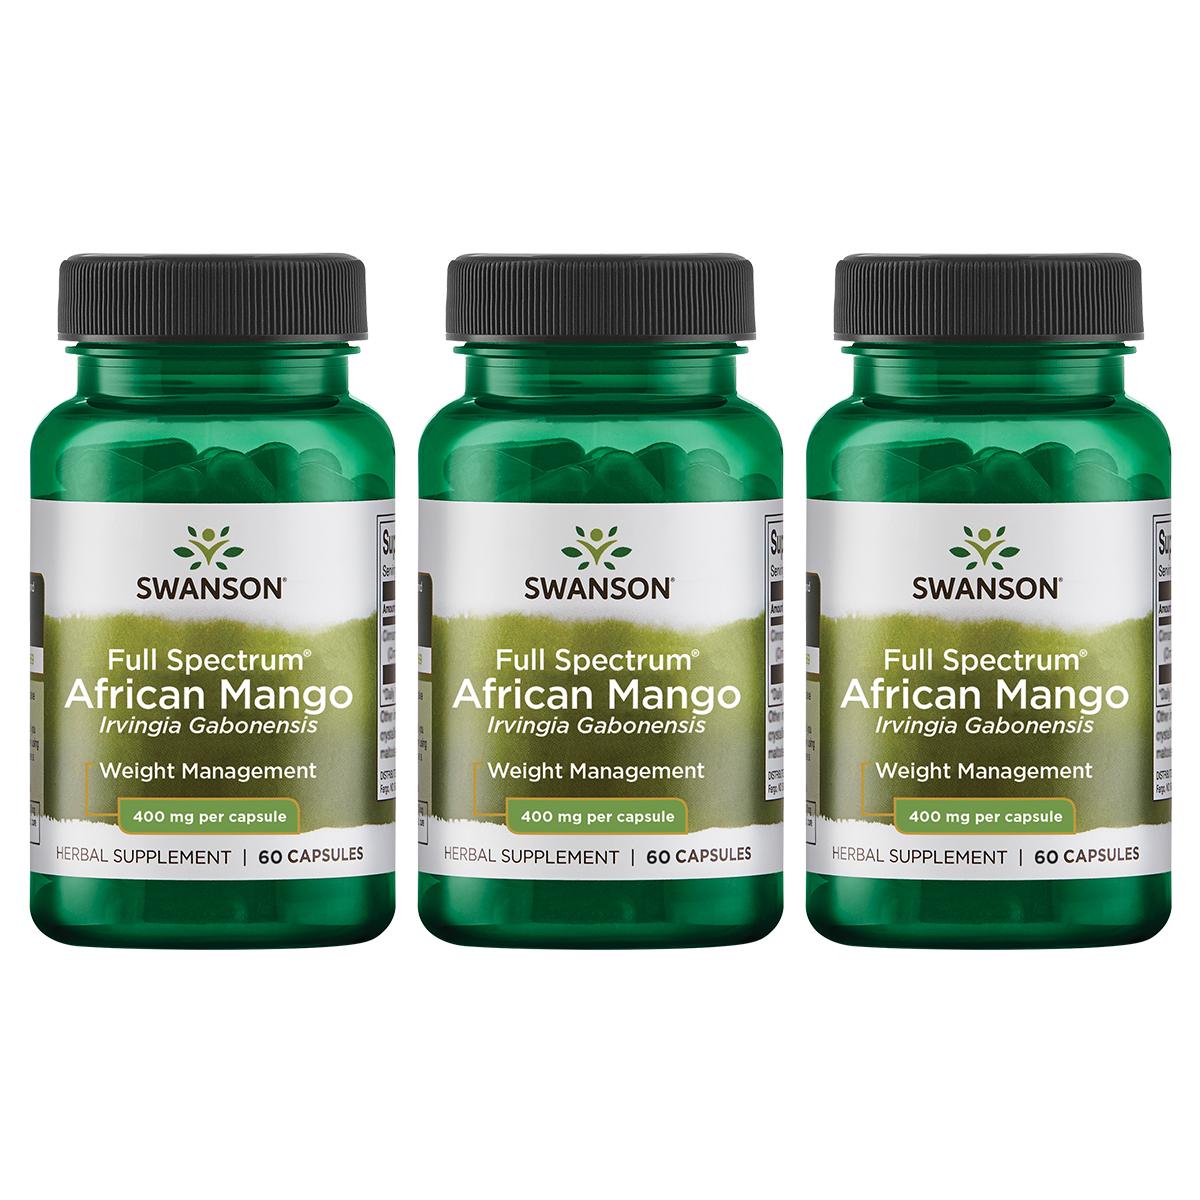 Swanson Premium Full Spectrum African Mango Irvingia Gabonensis 3 Pack Vitamin 400 mg 60 Caps Weight Management